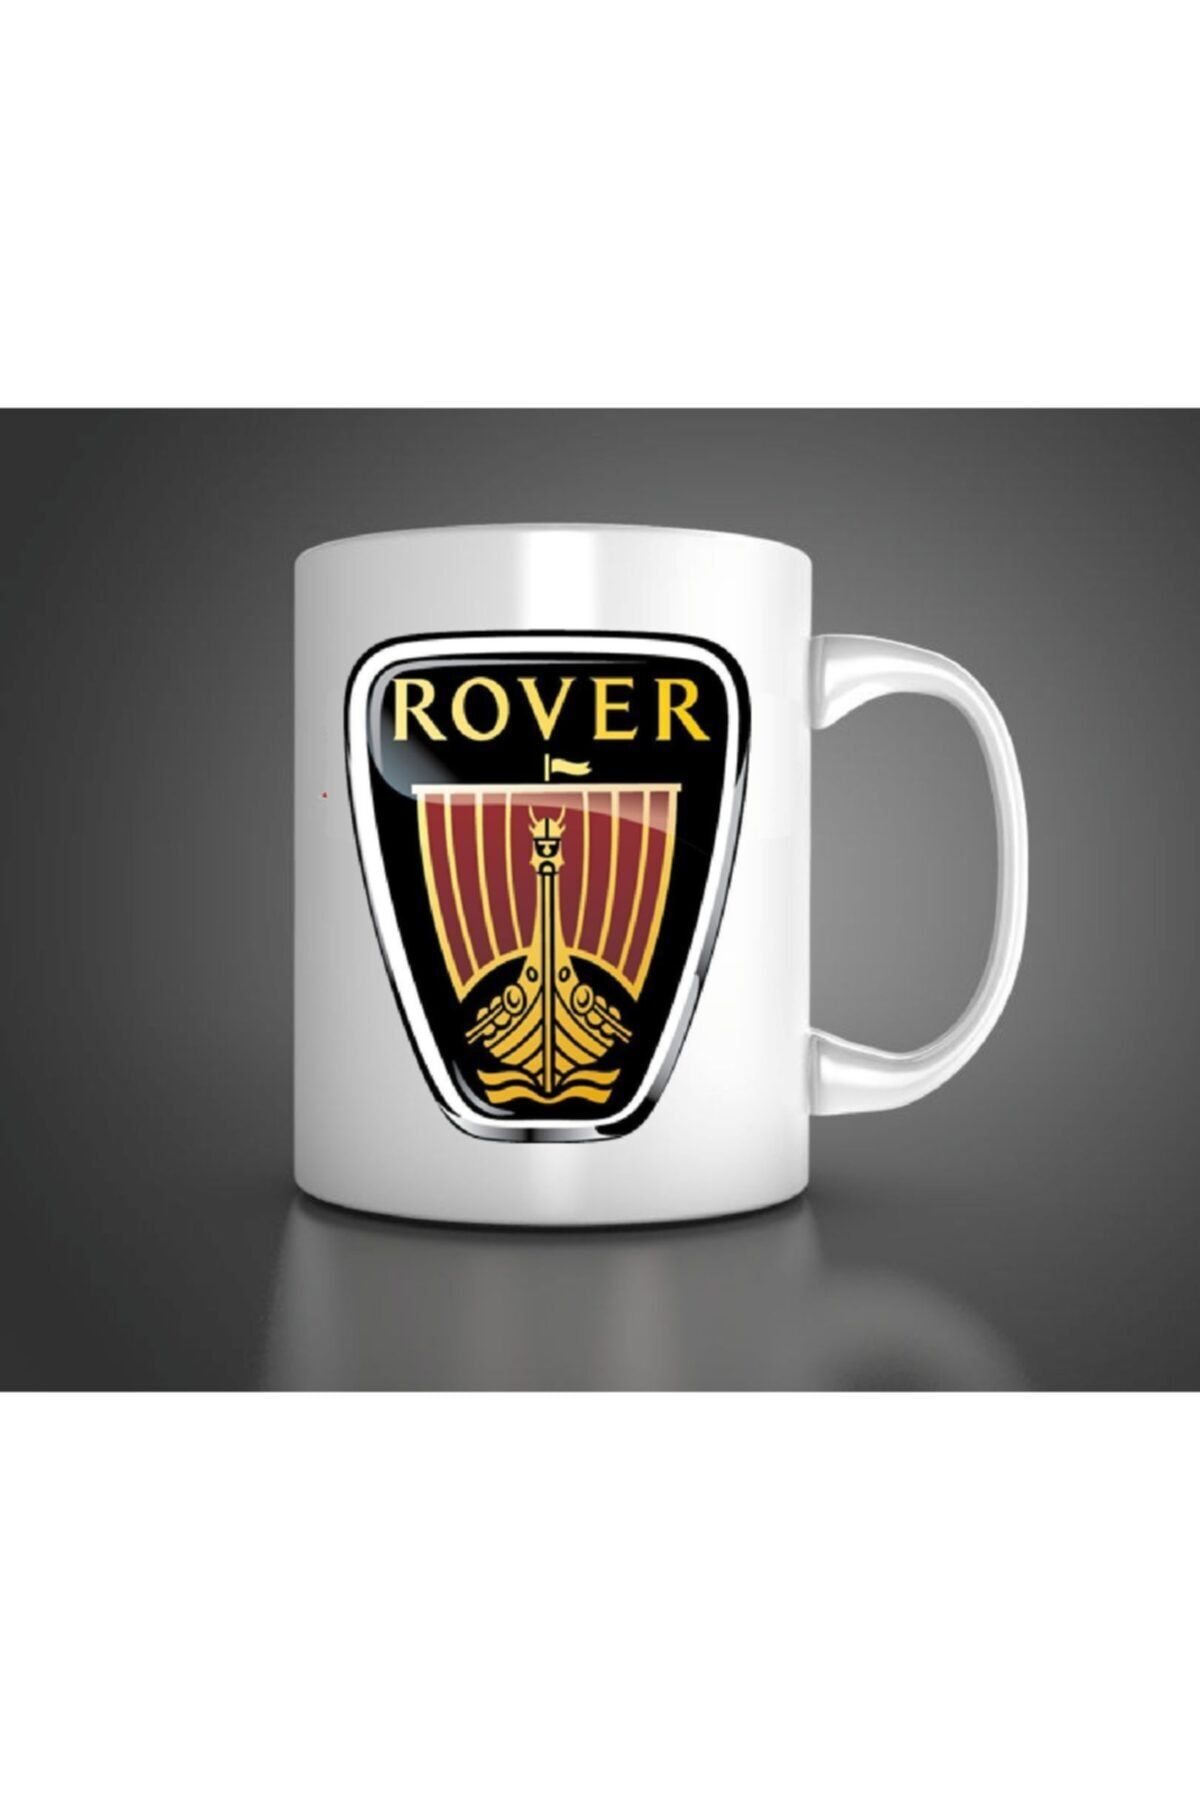 Açık Garaj Rover Baskılı Porselen Kupa